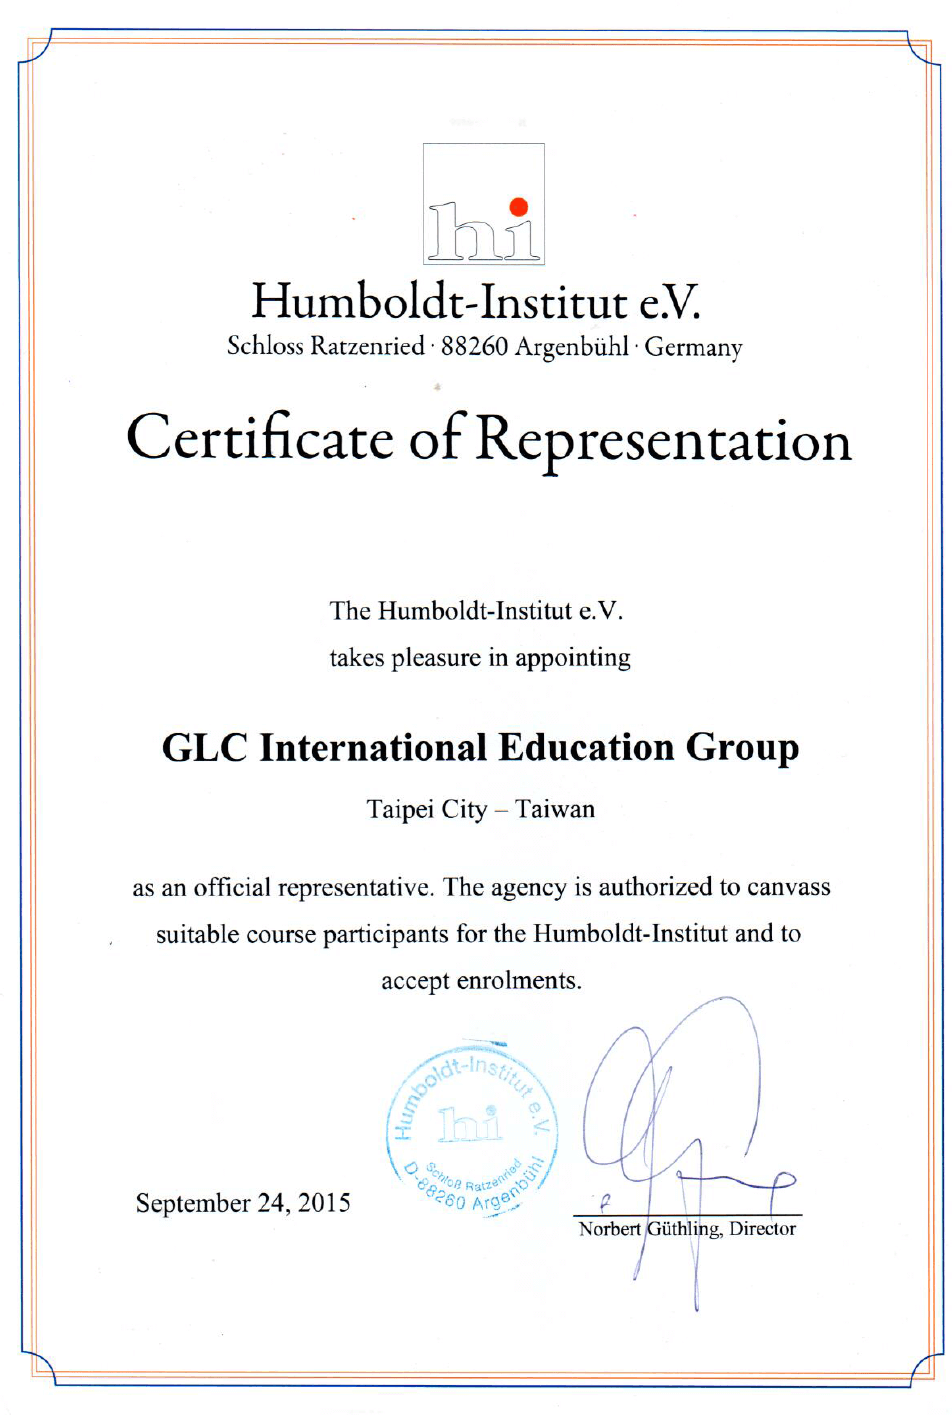 榮獲德國語言學校Humboldt-Institute授權代理 - GLC鉅霖遊學